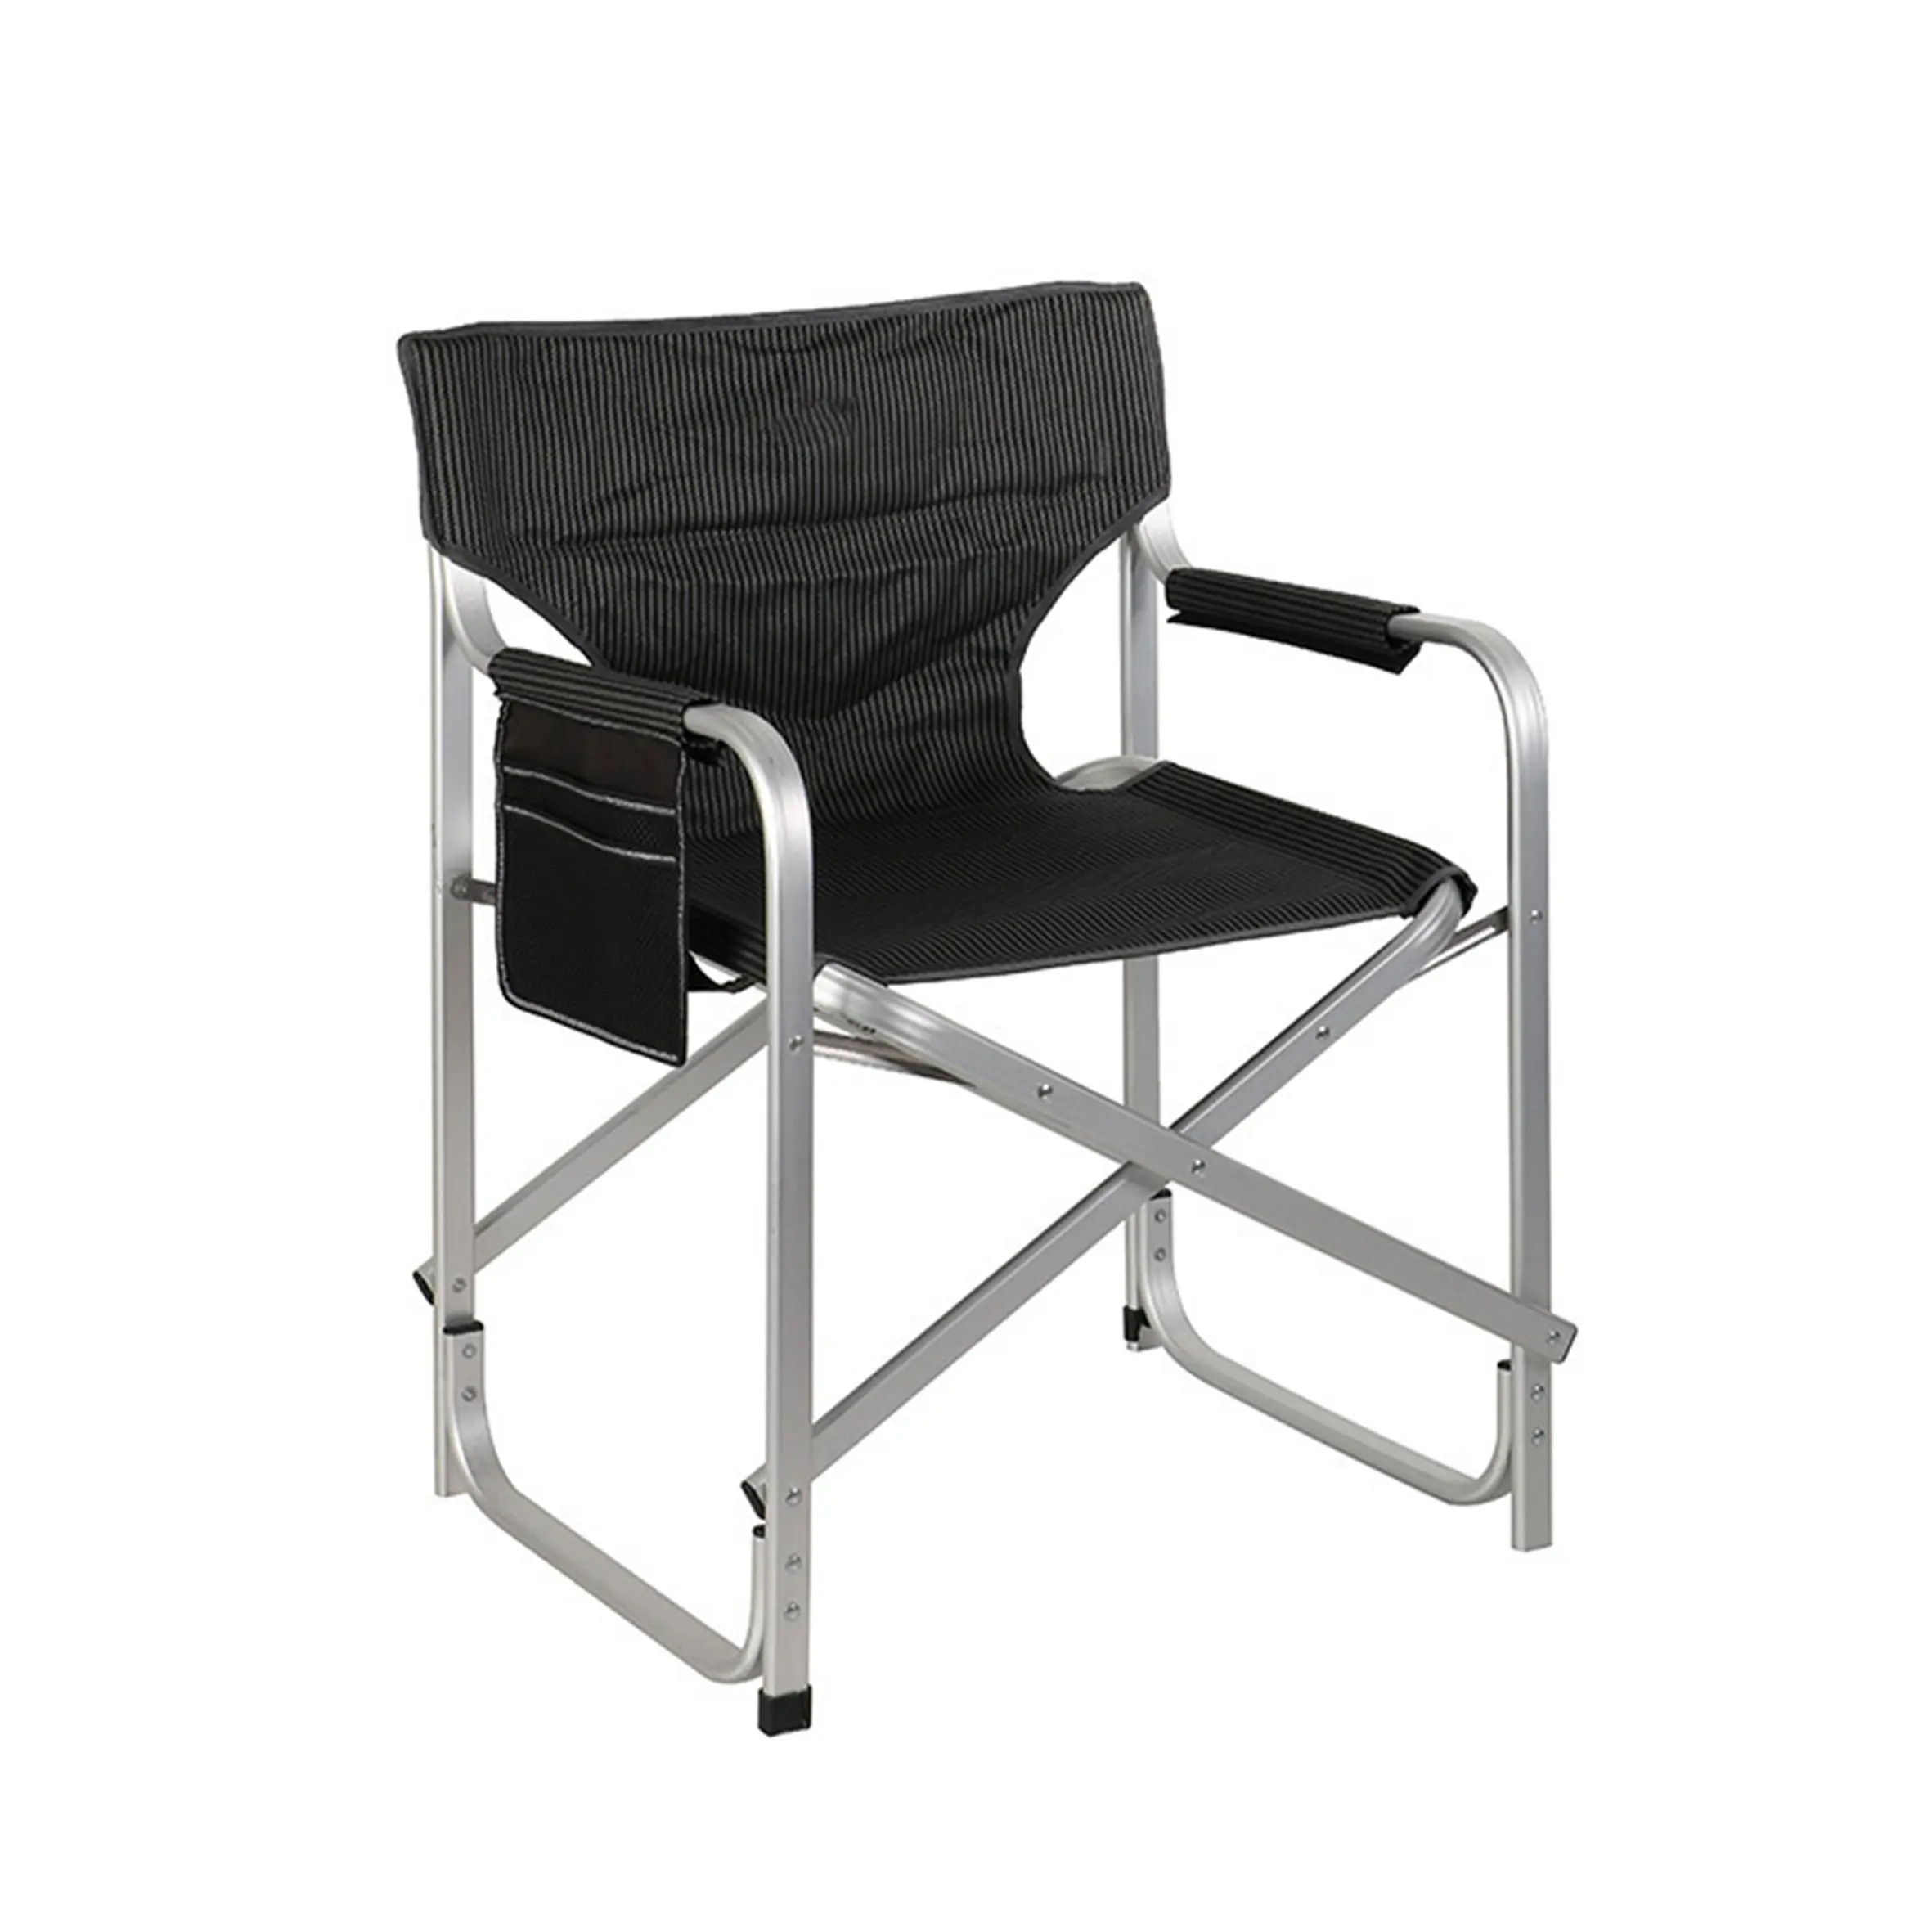 공장 가격 알루미늄 캠핑 의자 높은, 품질 우드 그레인 2 좌석 편안한 캠핑 의자/